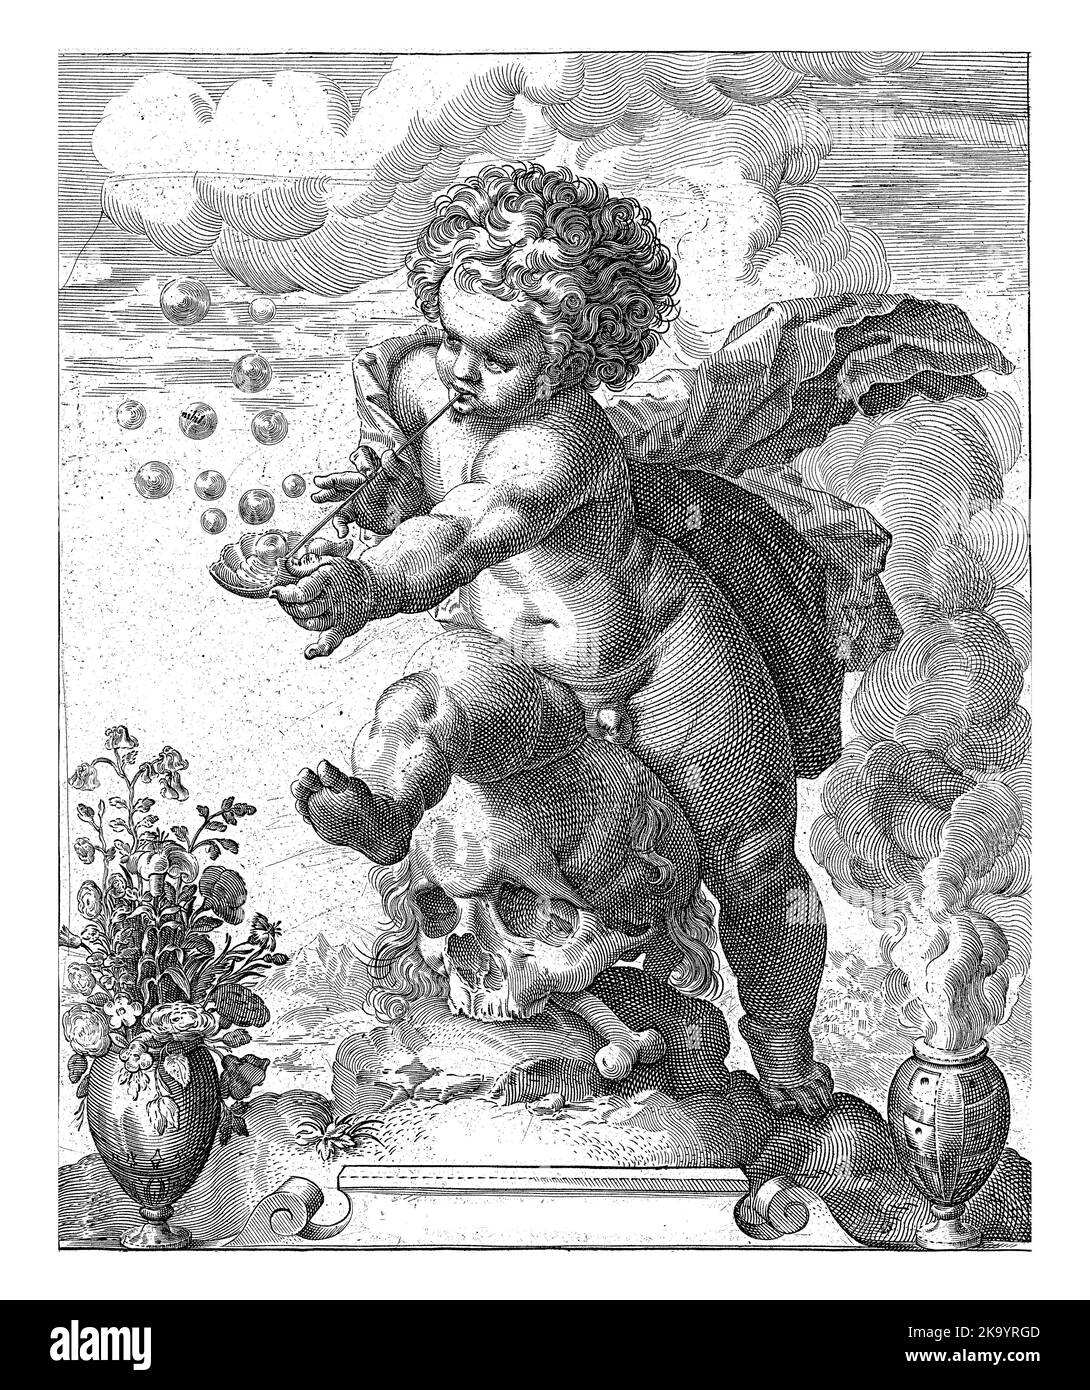 Ein Putto sitzt auf einem Schädel und bläst Blasen. Links eine Vase mit Blumen und rechts ein rauchenden Fass. Unterhalb der Performance zwei vierzeilige Vers Stockfoto